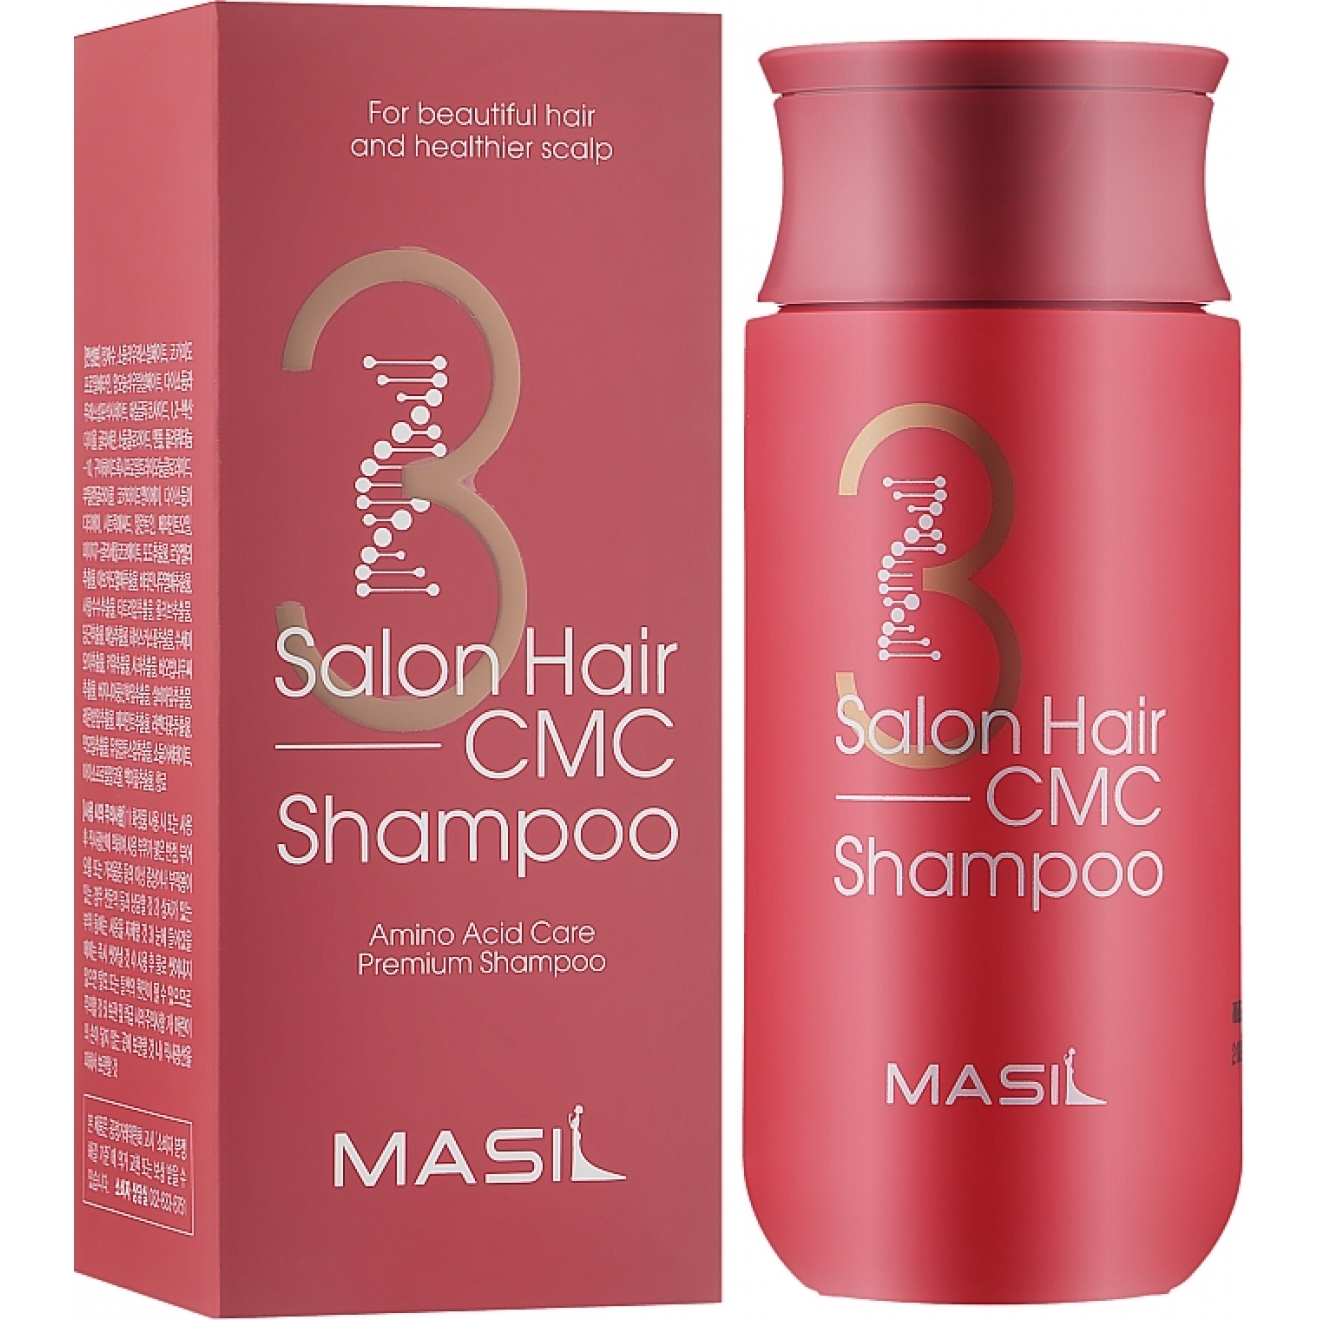 Masil, 3 Salon Hair CMC Shampoo, 150 ml